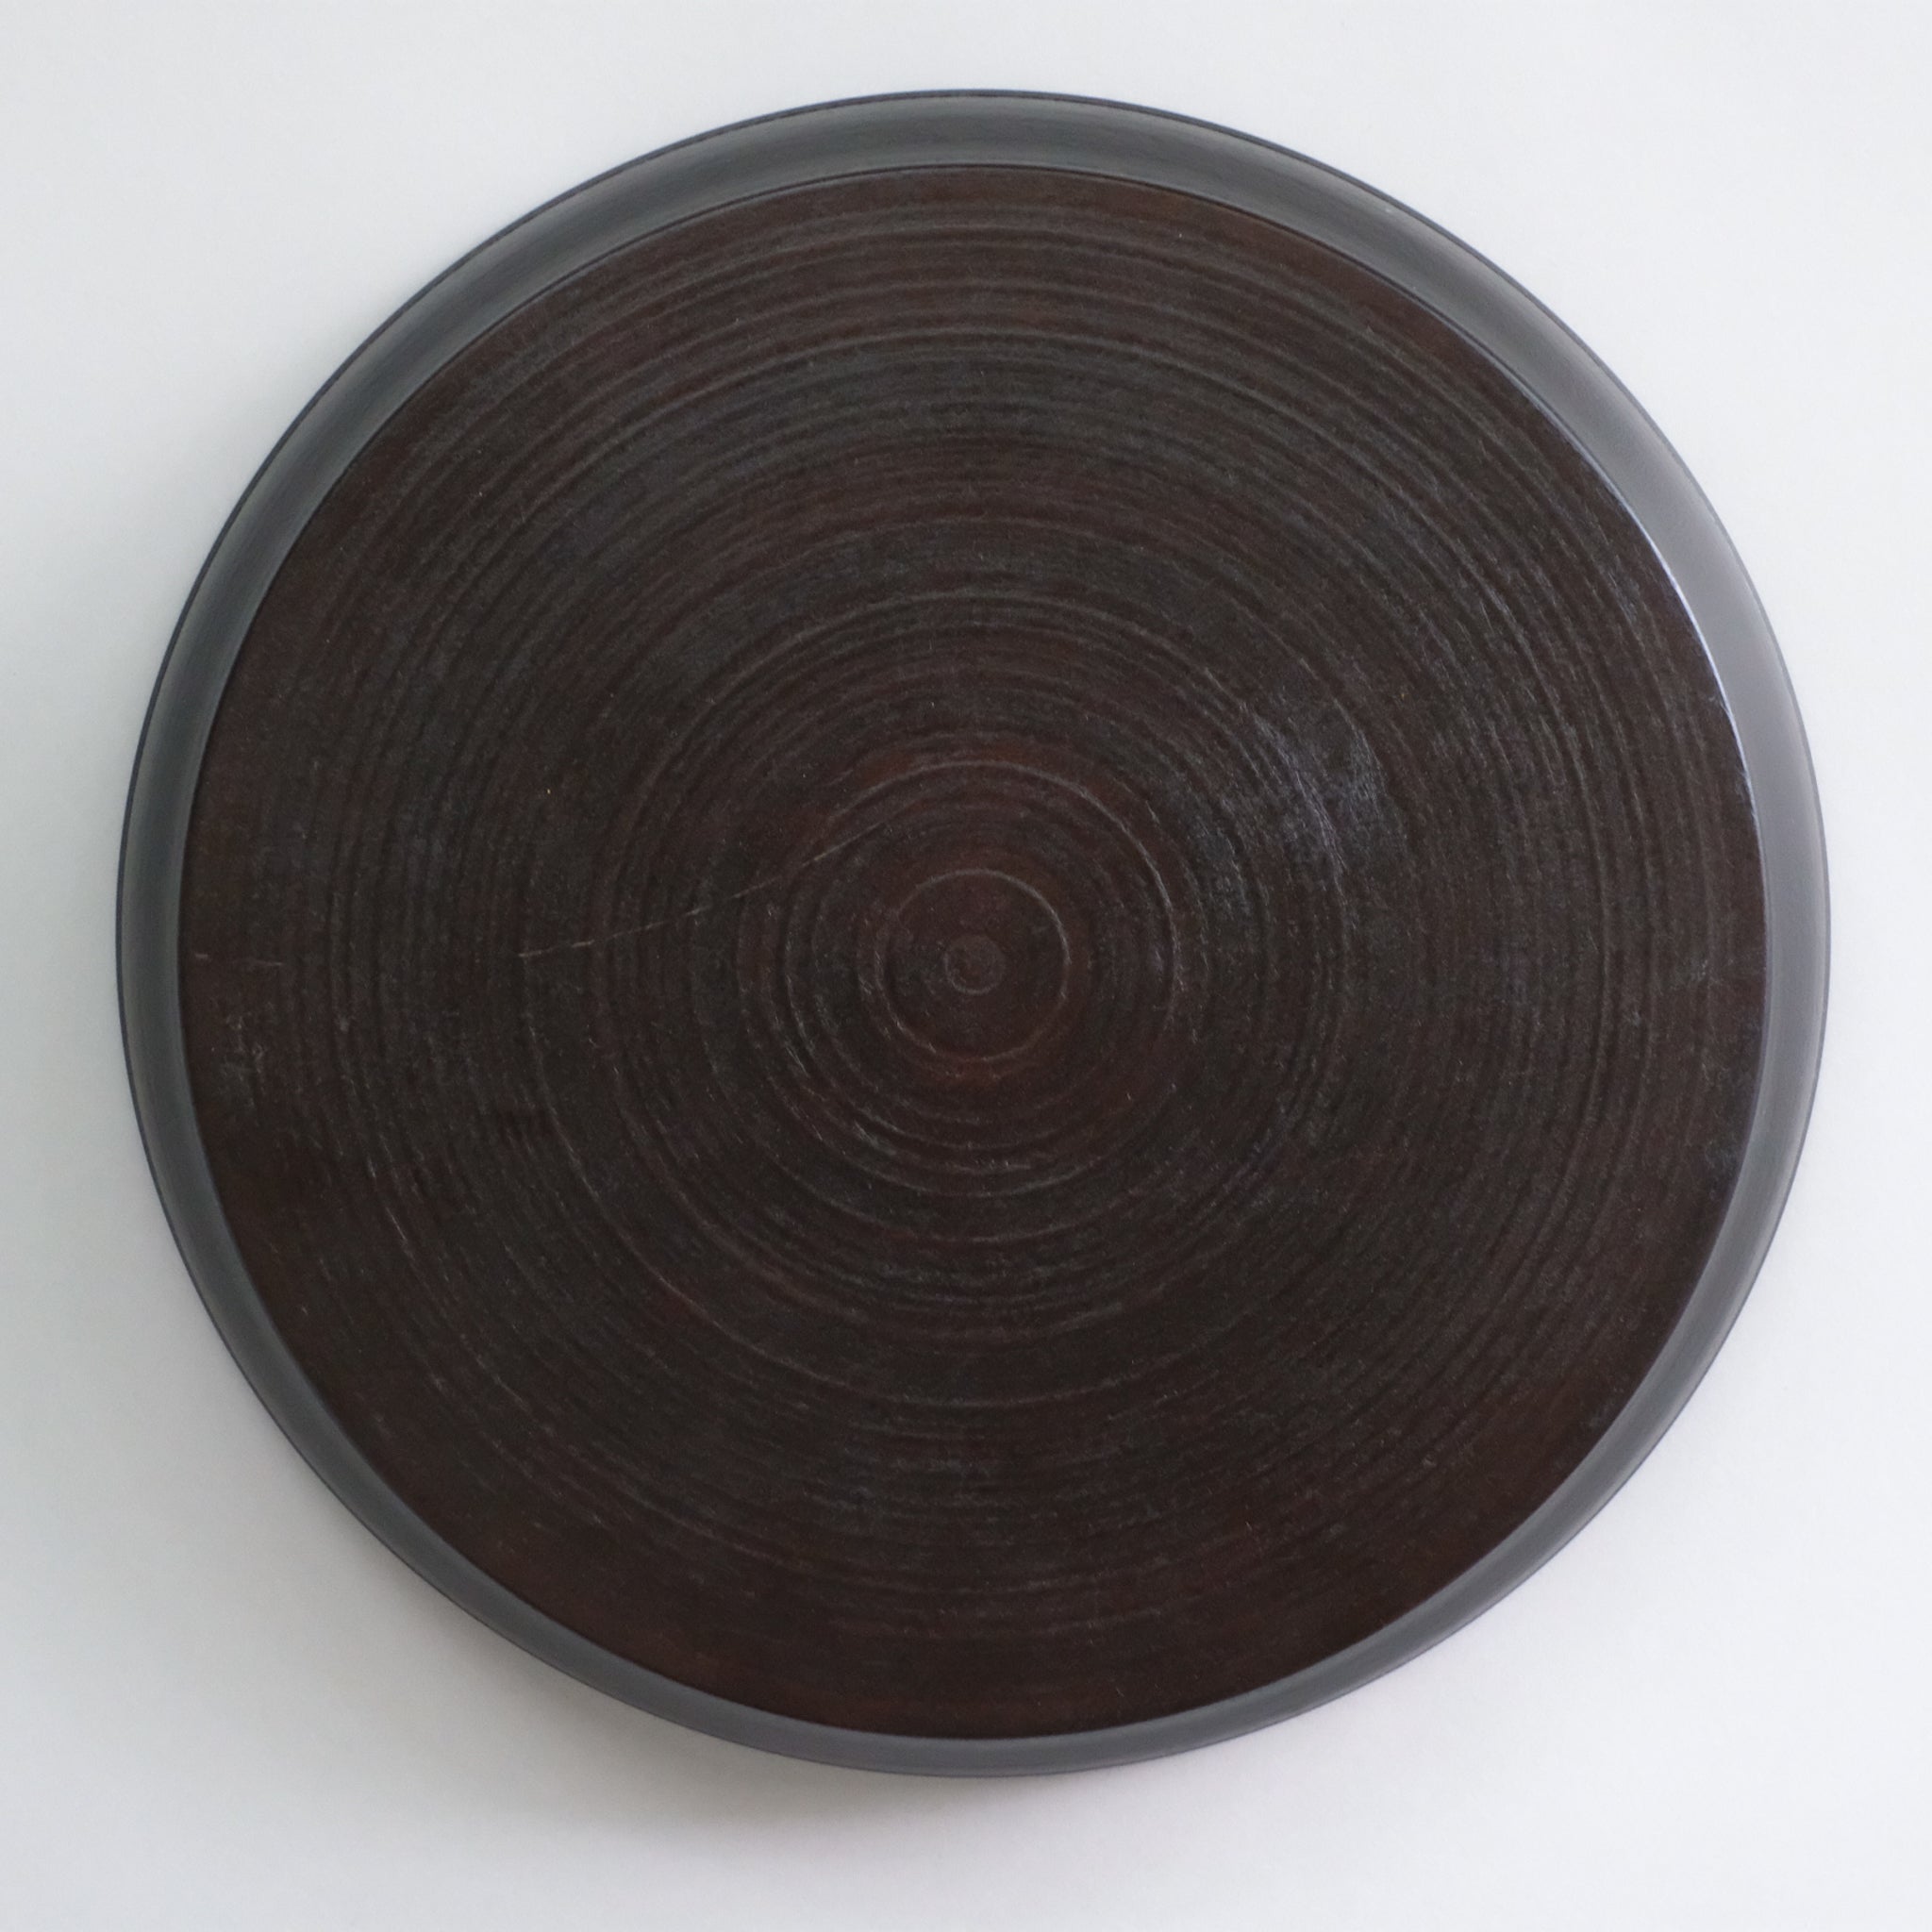 赤木明登  パン皿 大 (日の丸)  Akito Akagi Bread Plate L-size ( Red x Black )